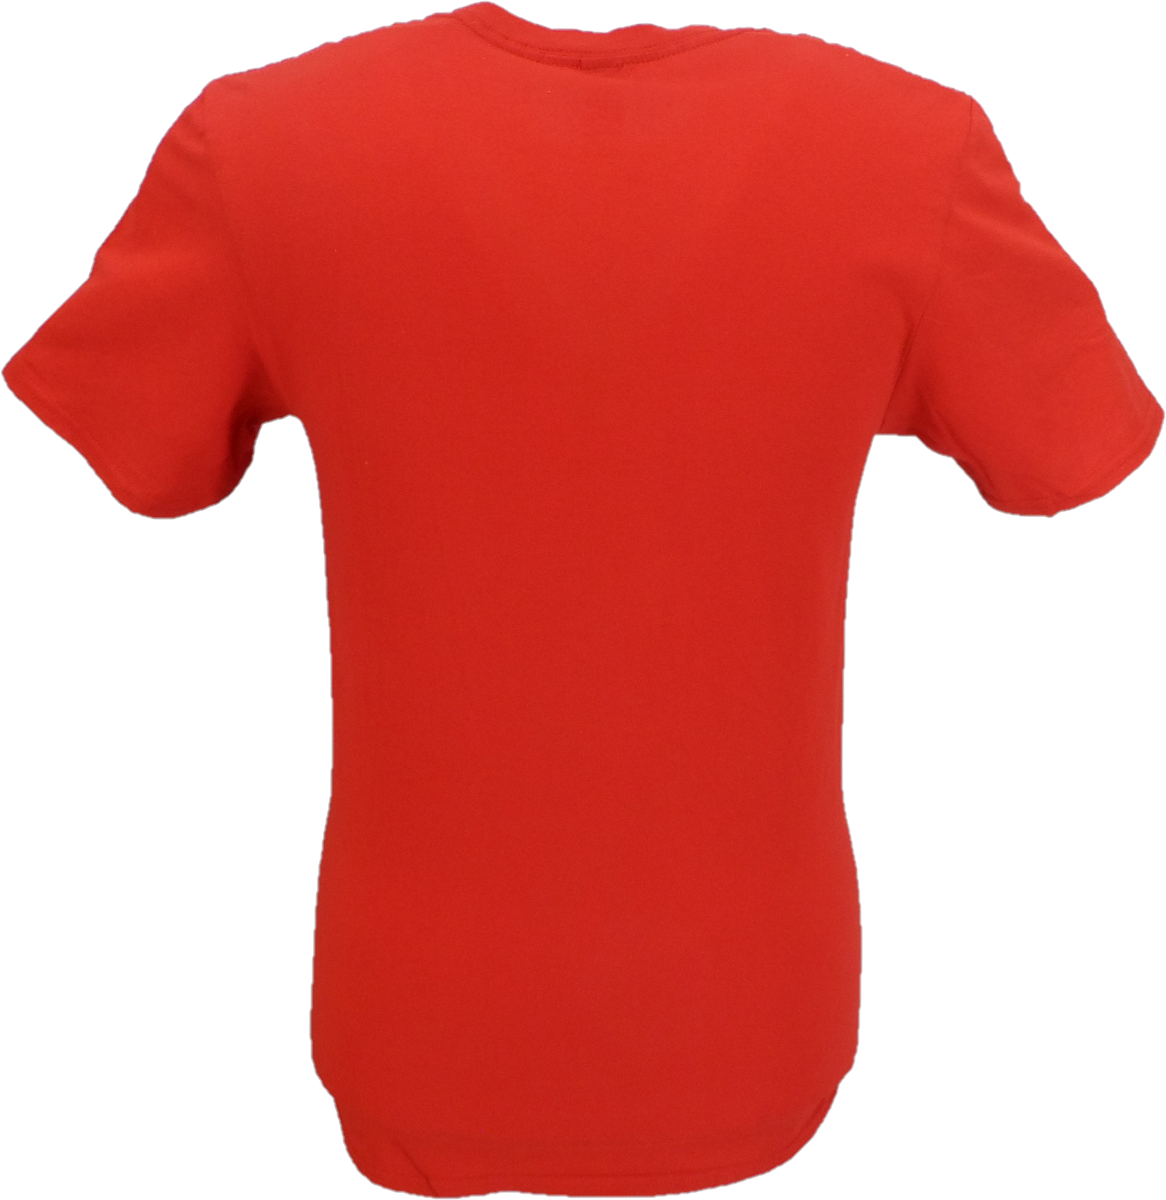 Magliette da uomo con sottile logo rosso lizzy Officially Licensed